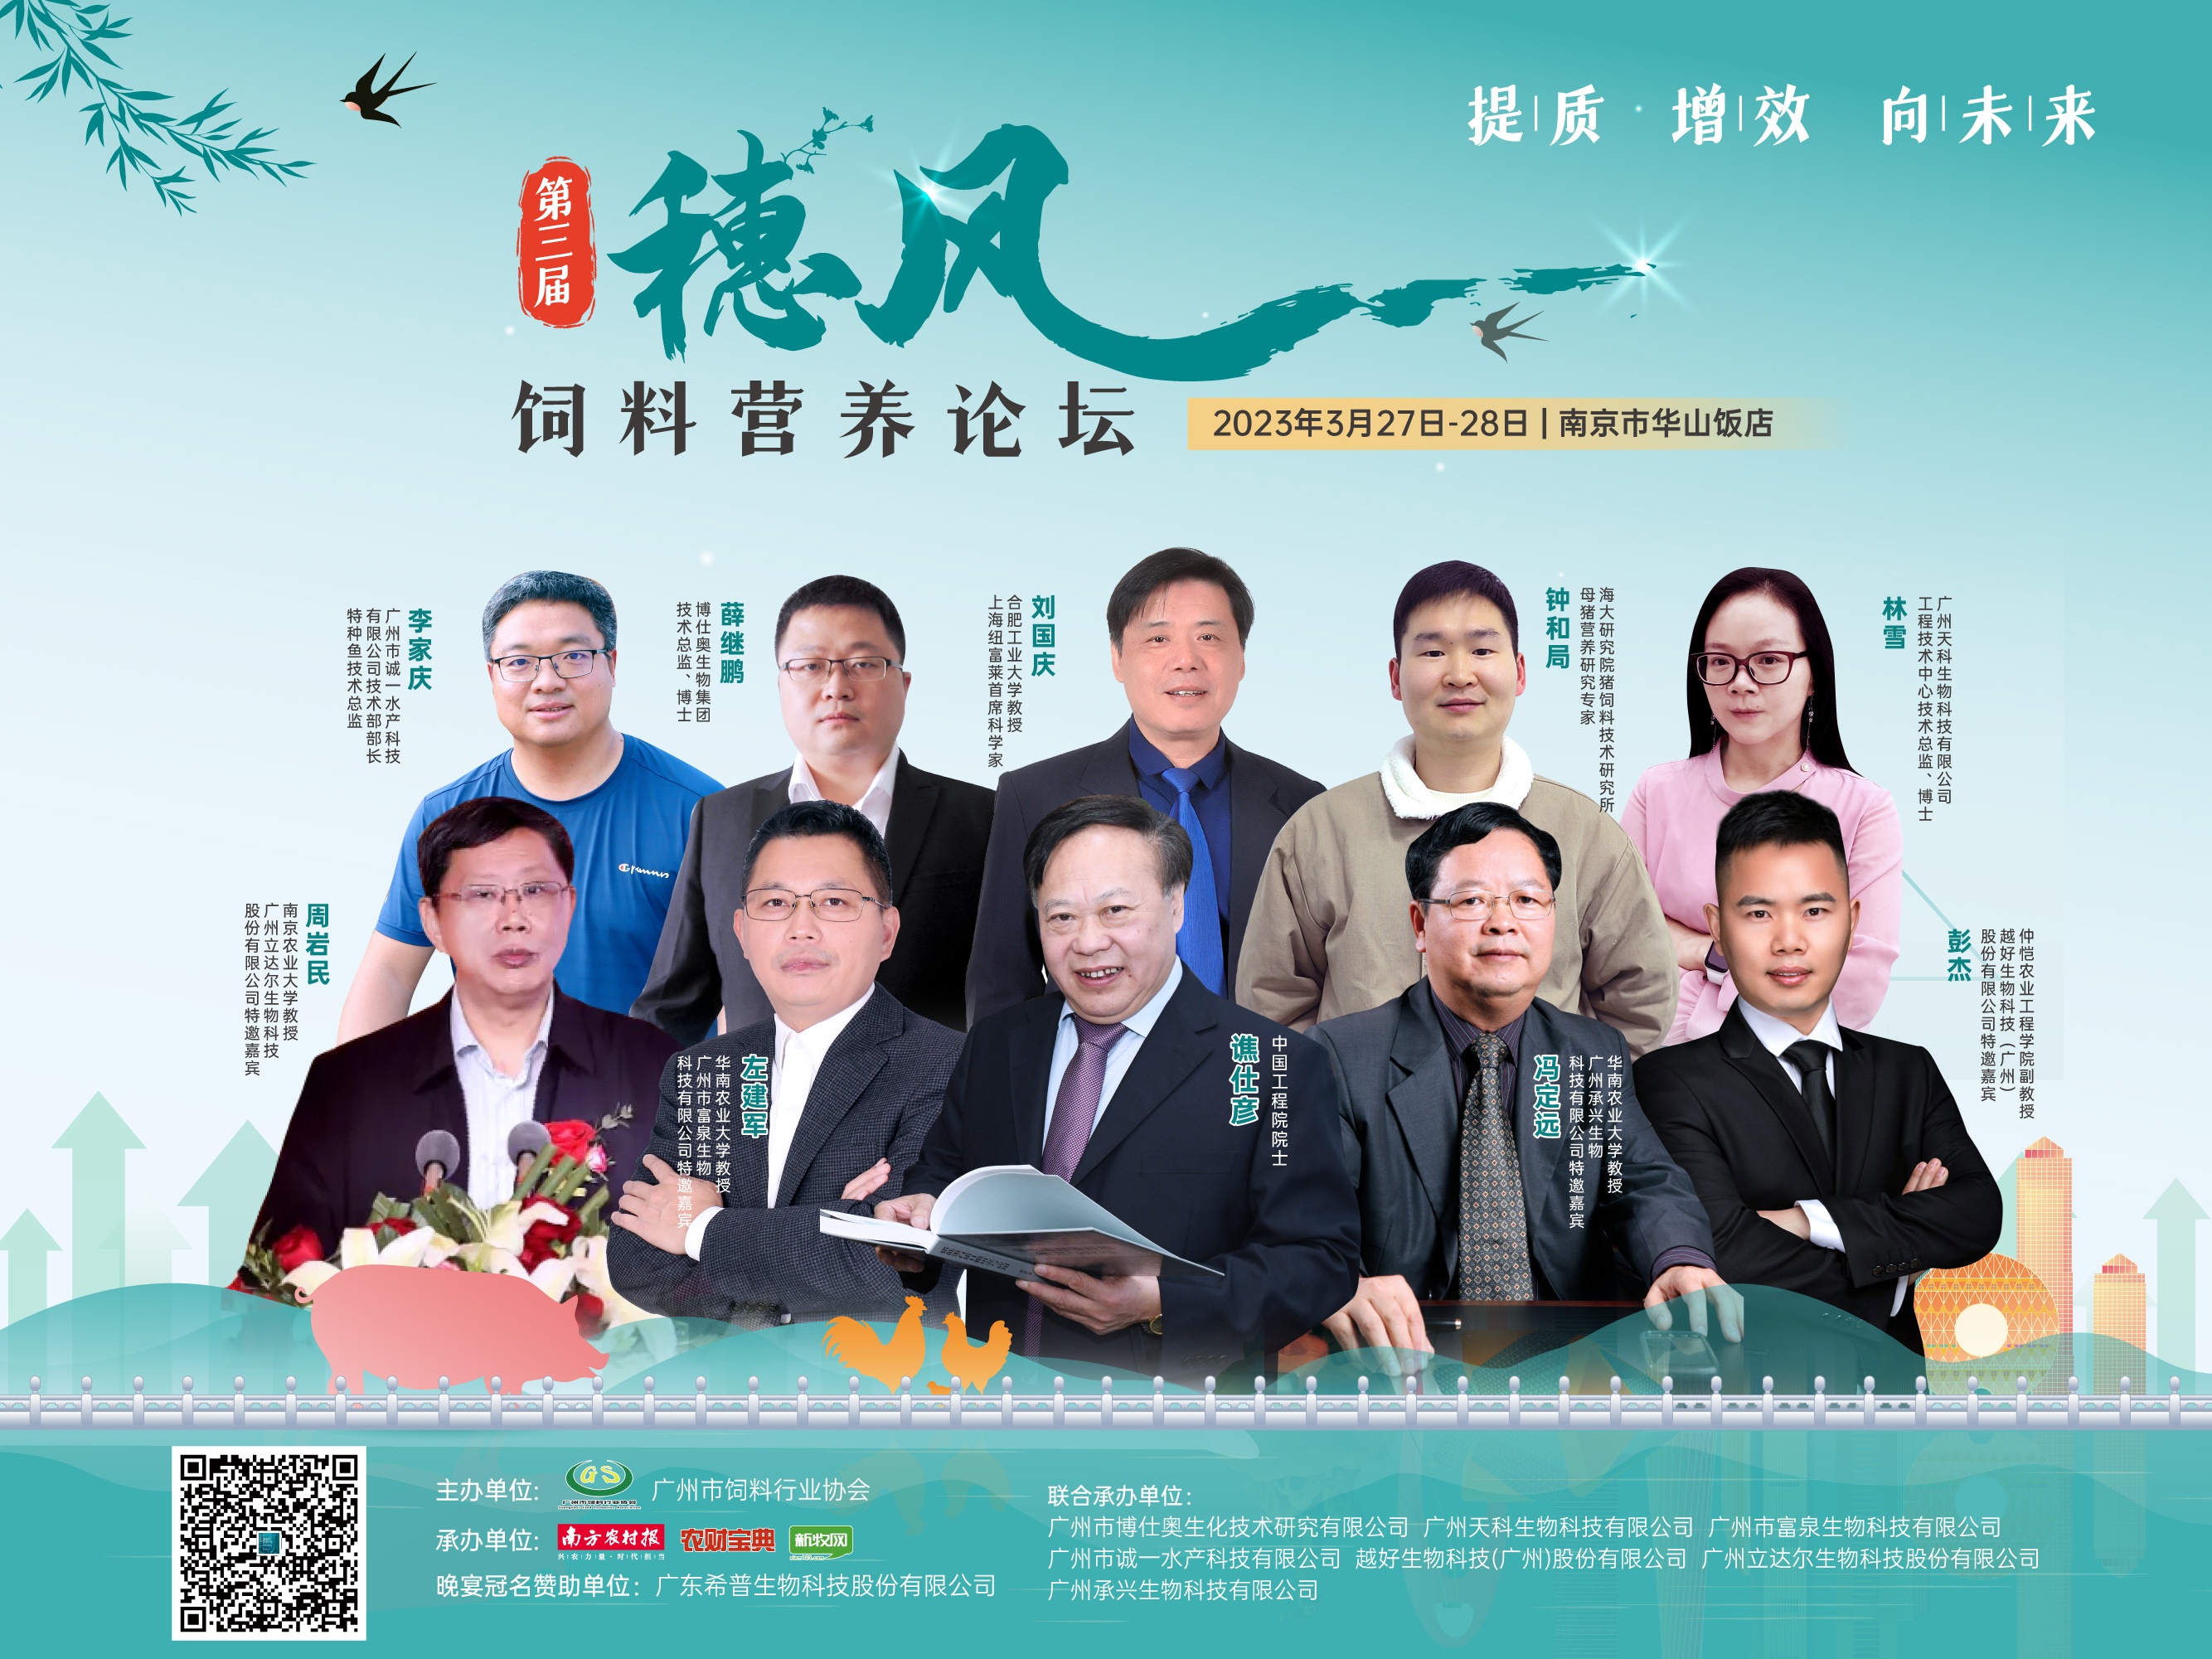 3月27-28日，第三届穗风饲料营养论坛将在南京举办！